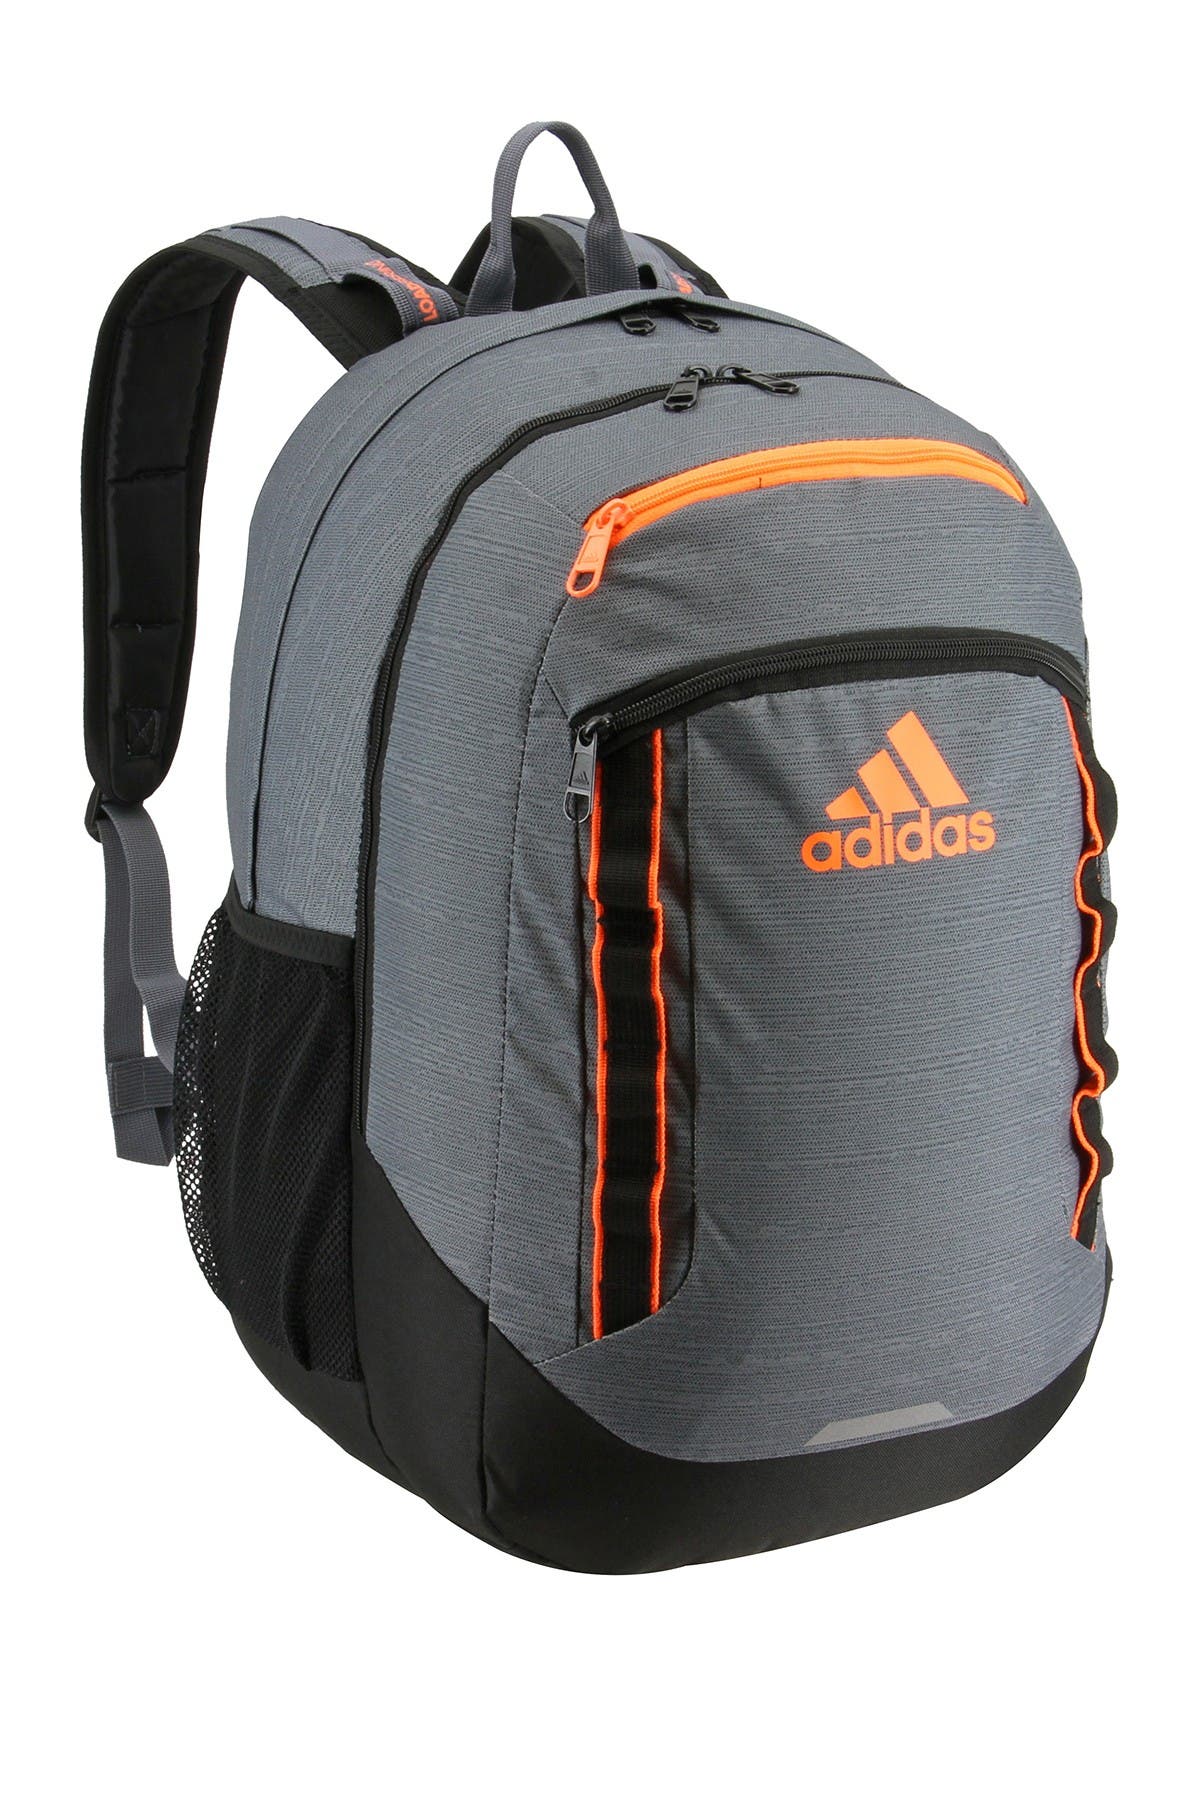 nordstrom rack adidas backpack